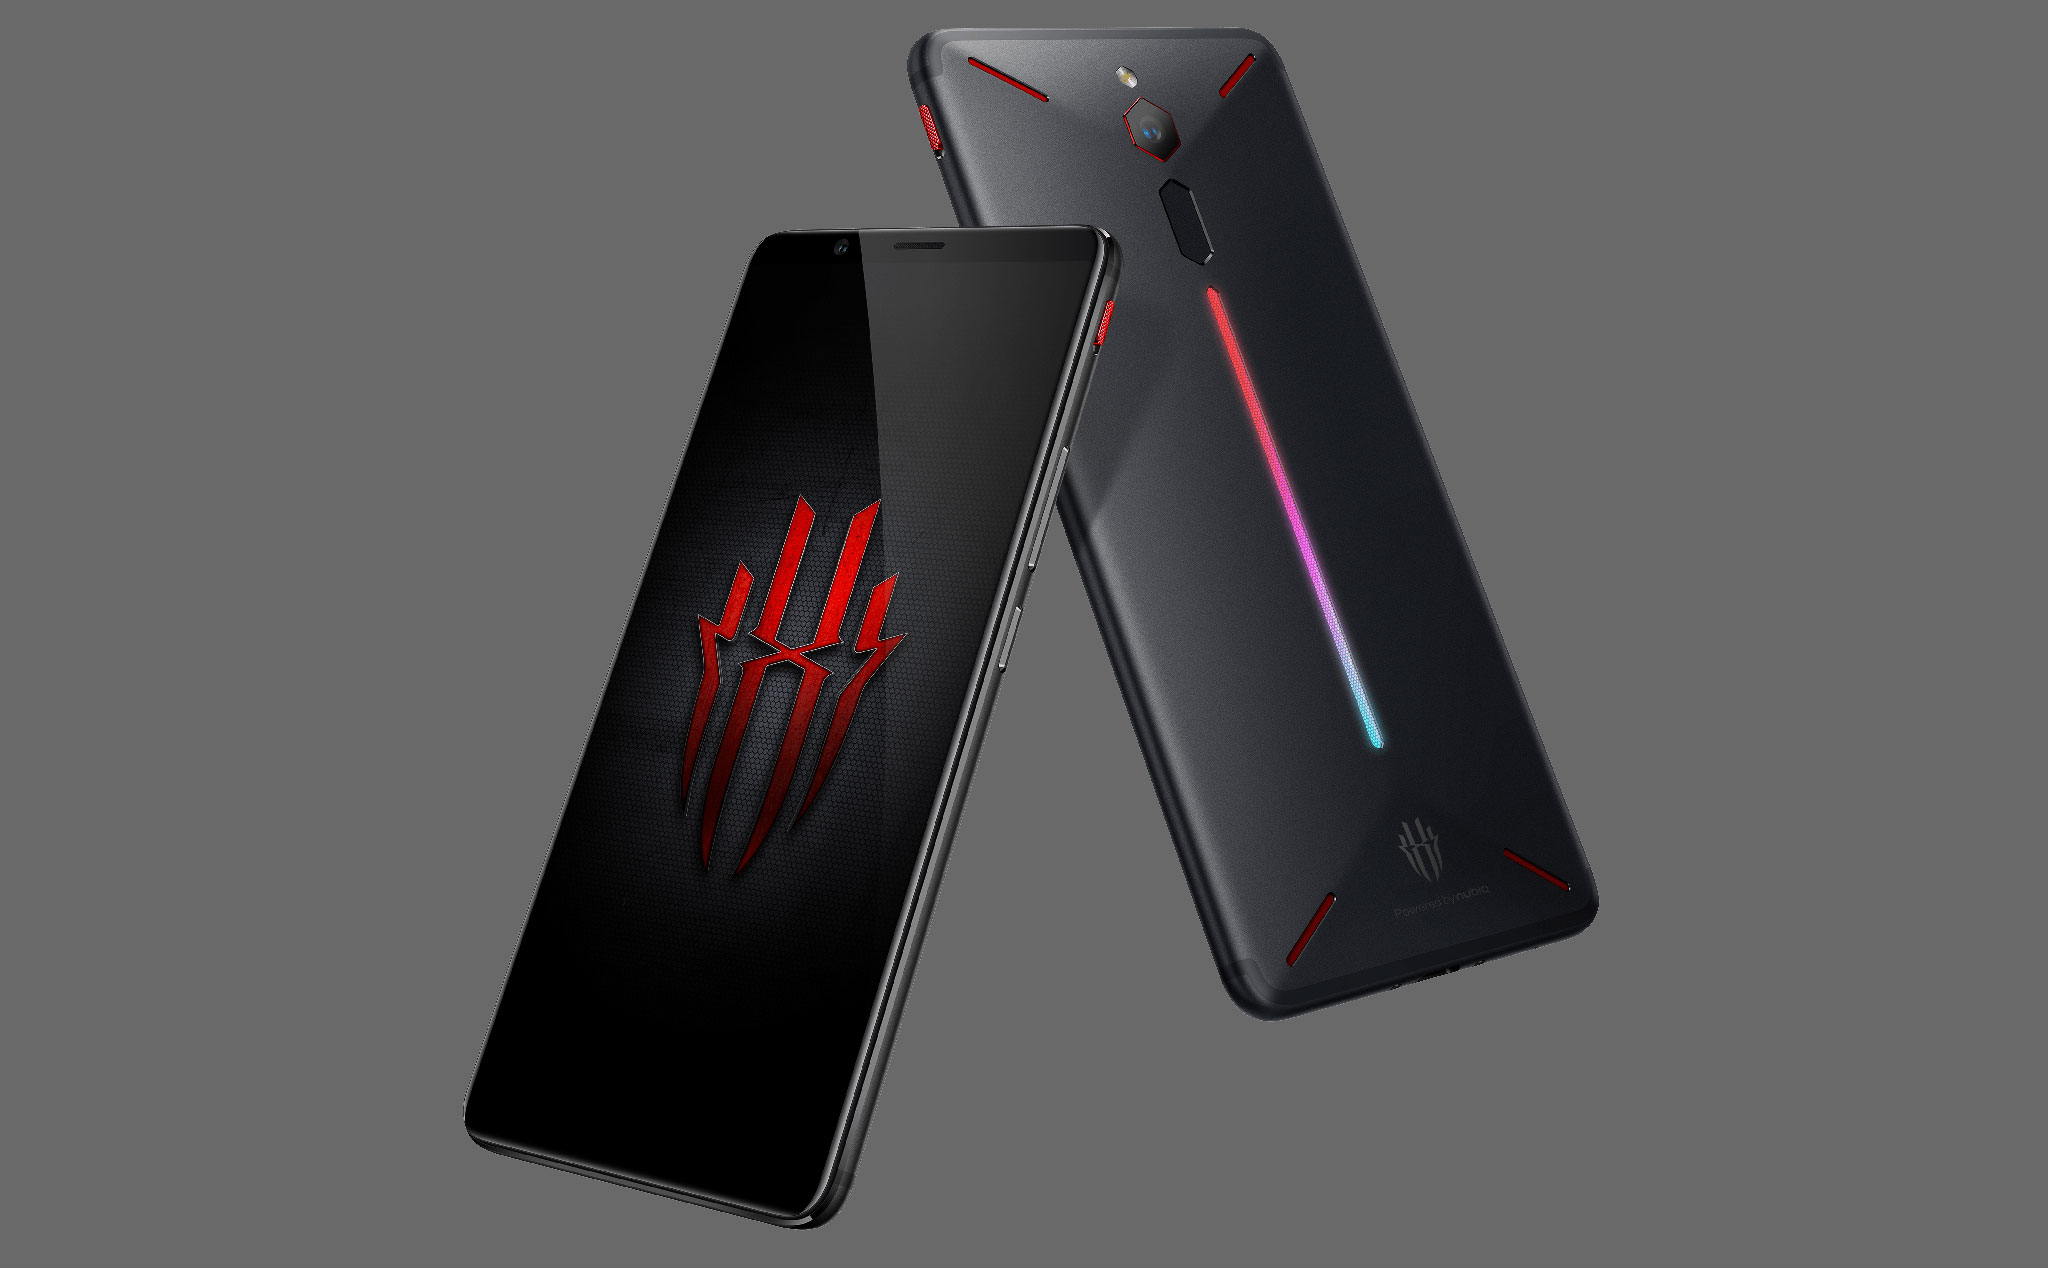 Nubia đang phát triển gaming phone Red Magic với màn hình 144Hz